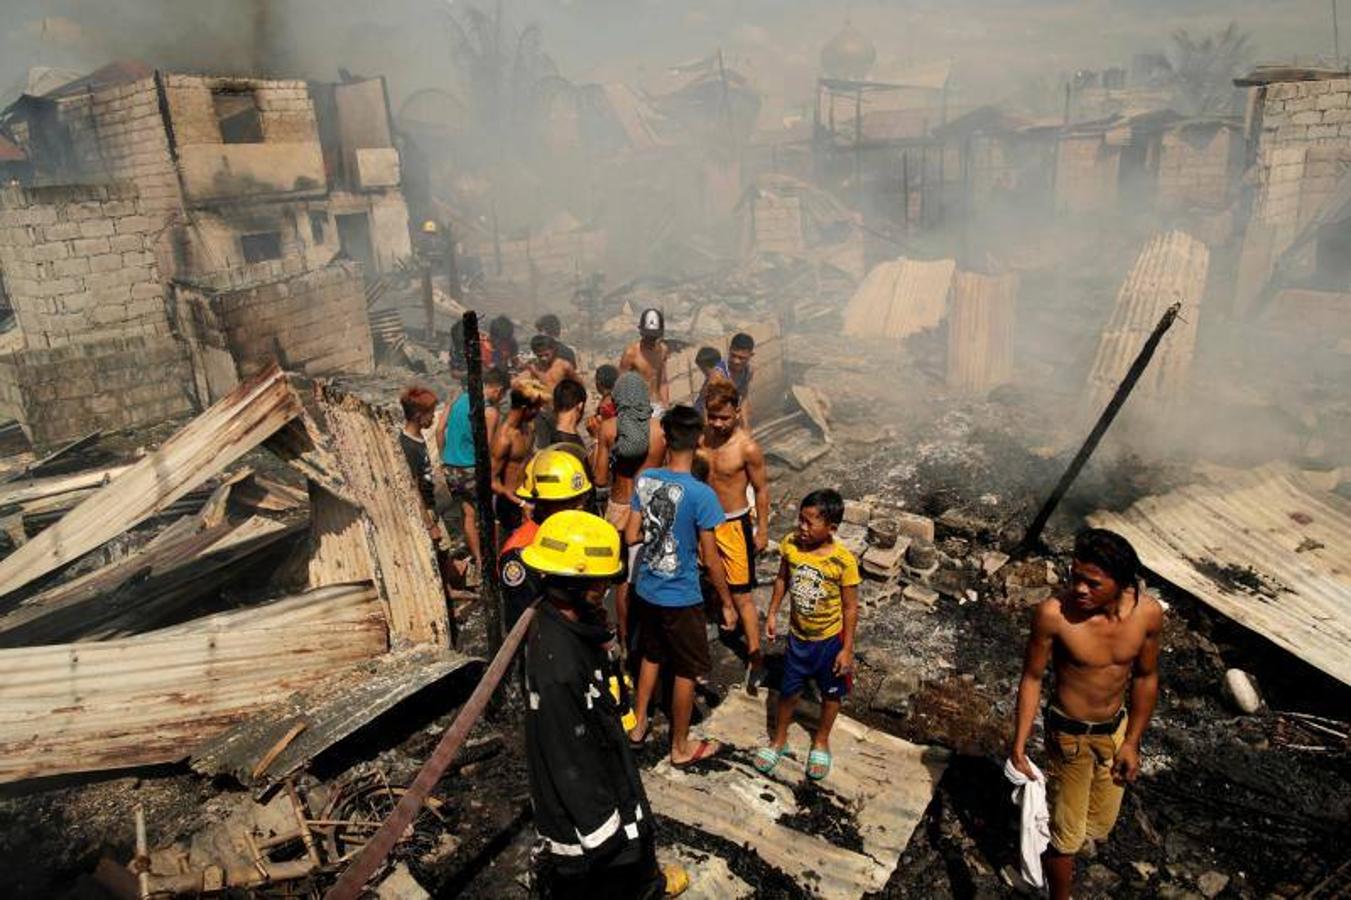 Residentes se afanan por apagar las llamas durante el incendio originado en un barrio de chabolas de Manila, en Filipinas, hoy, 11 de enero de 2019. El incendio destrozó las viviendas de al menos 100 familias pobres.